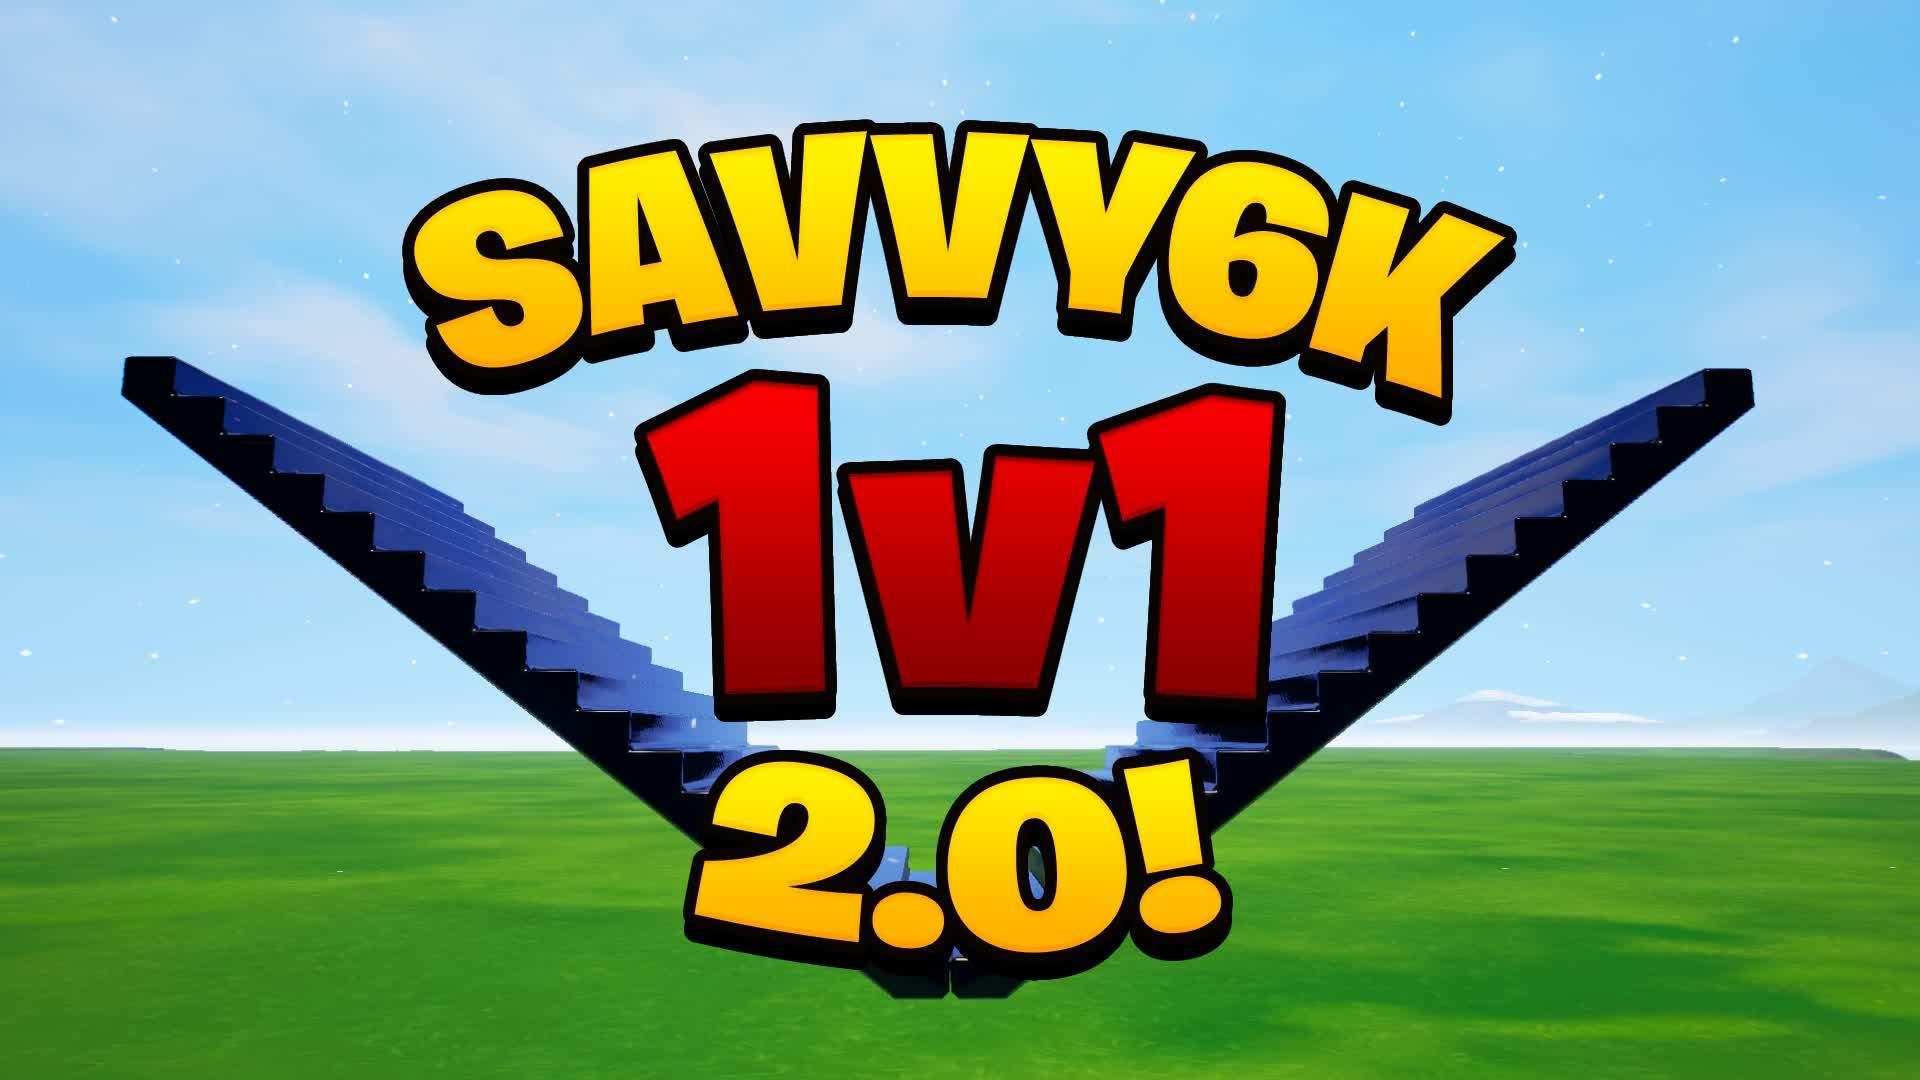 Savvy6k's 1v1 2.0!